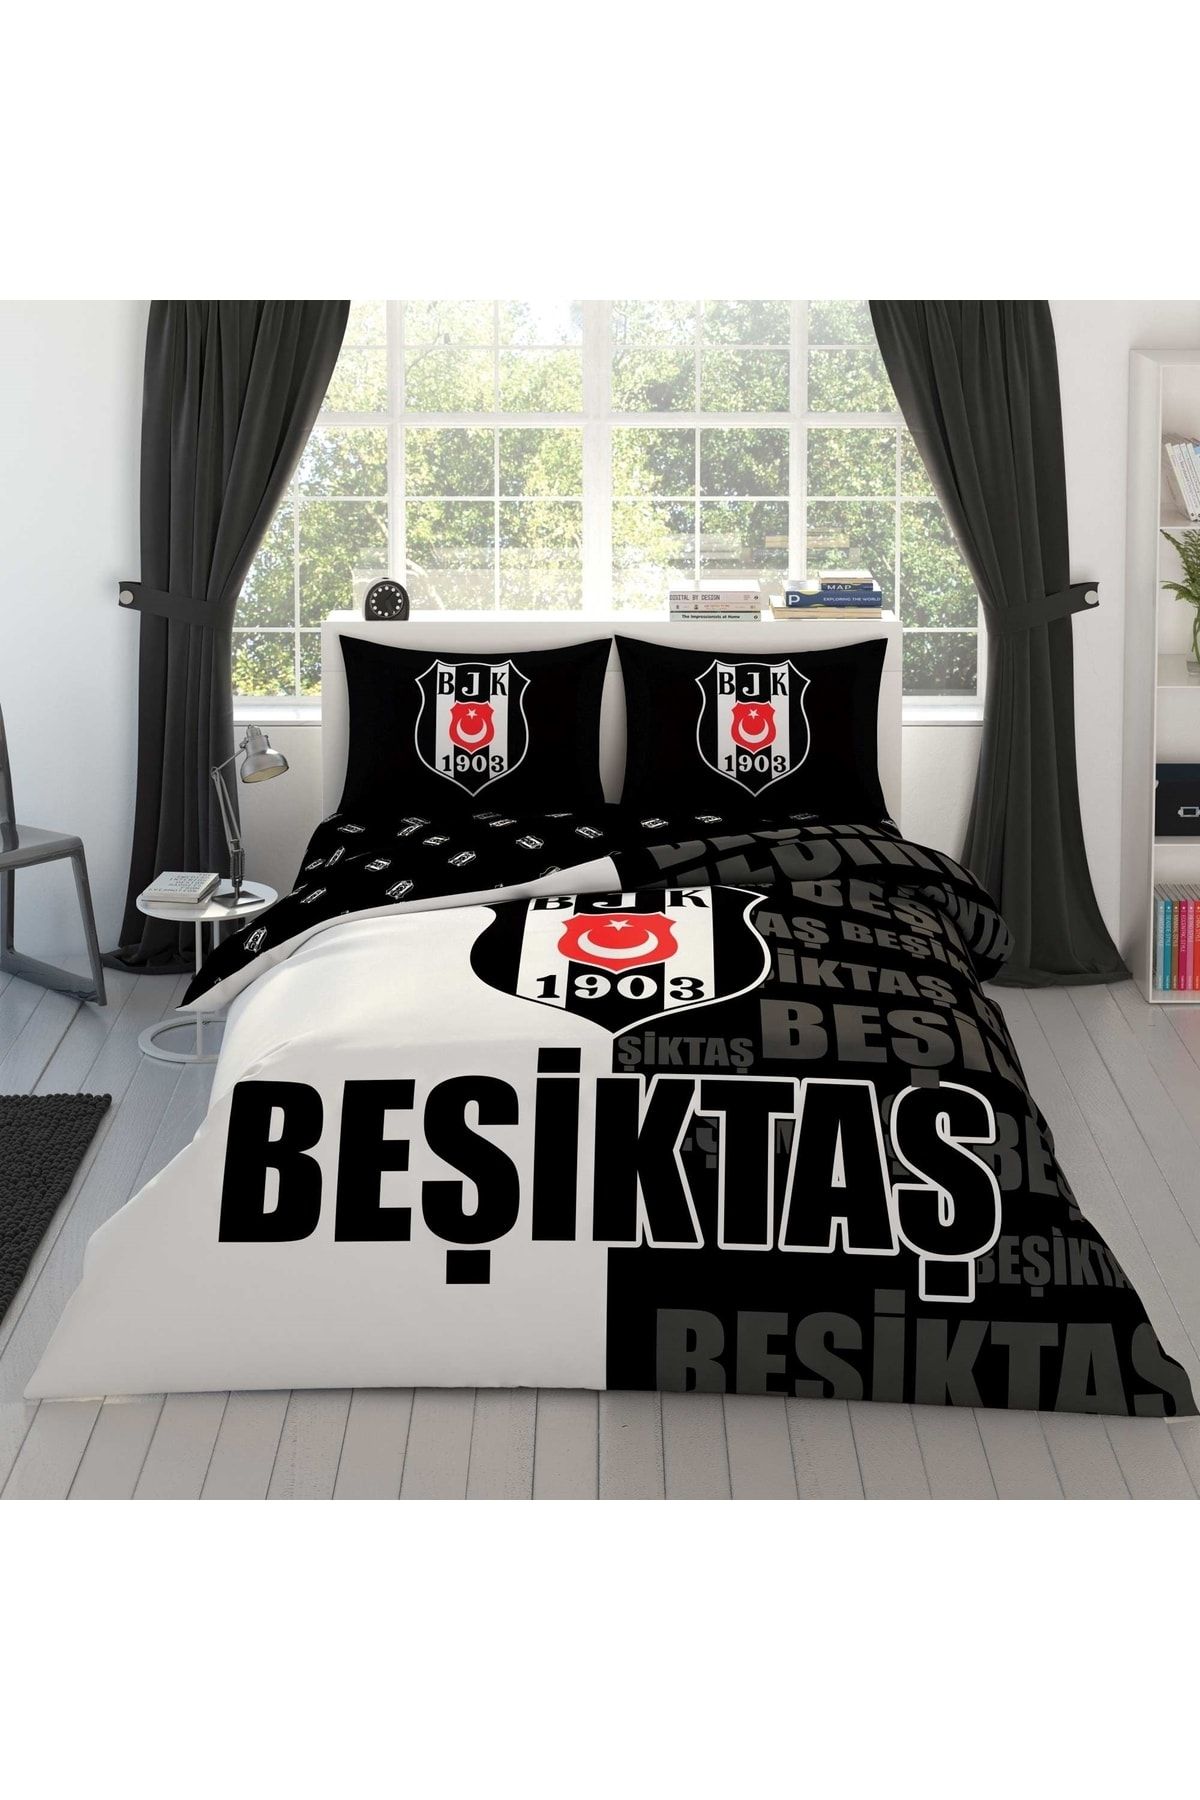 Taç ست لحاف دو نفره نخی لوگوی Beşiktaş Piece